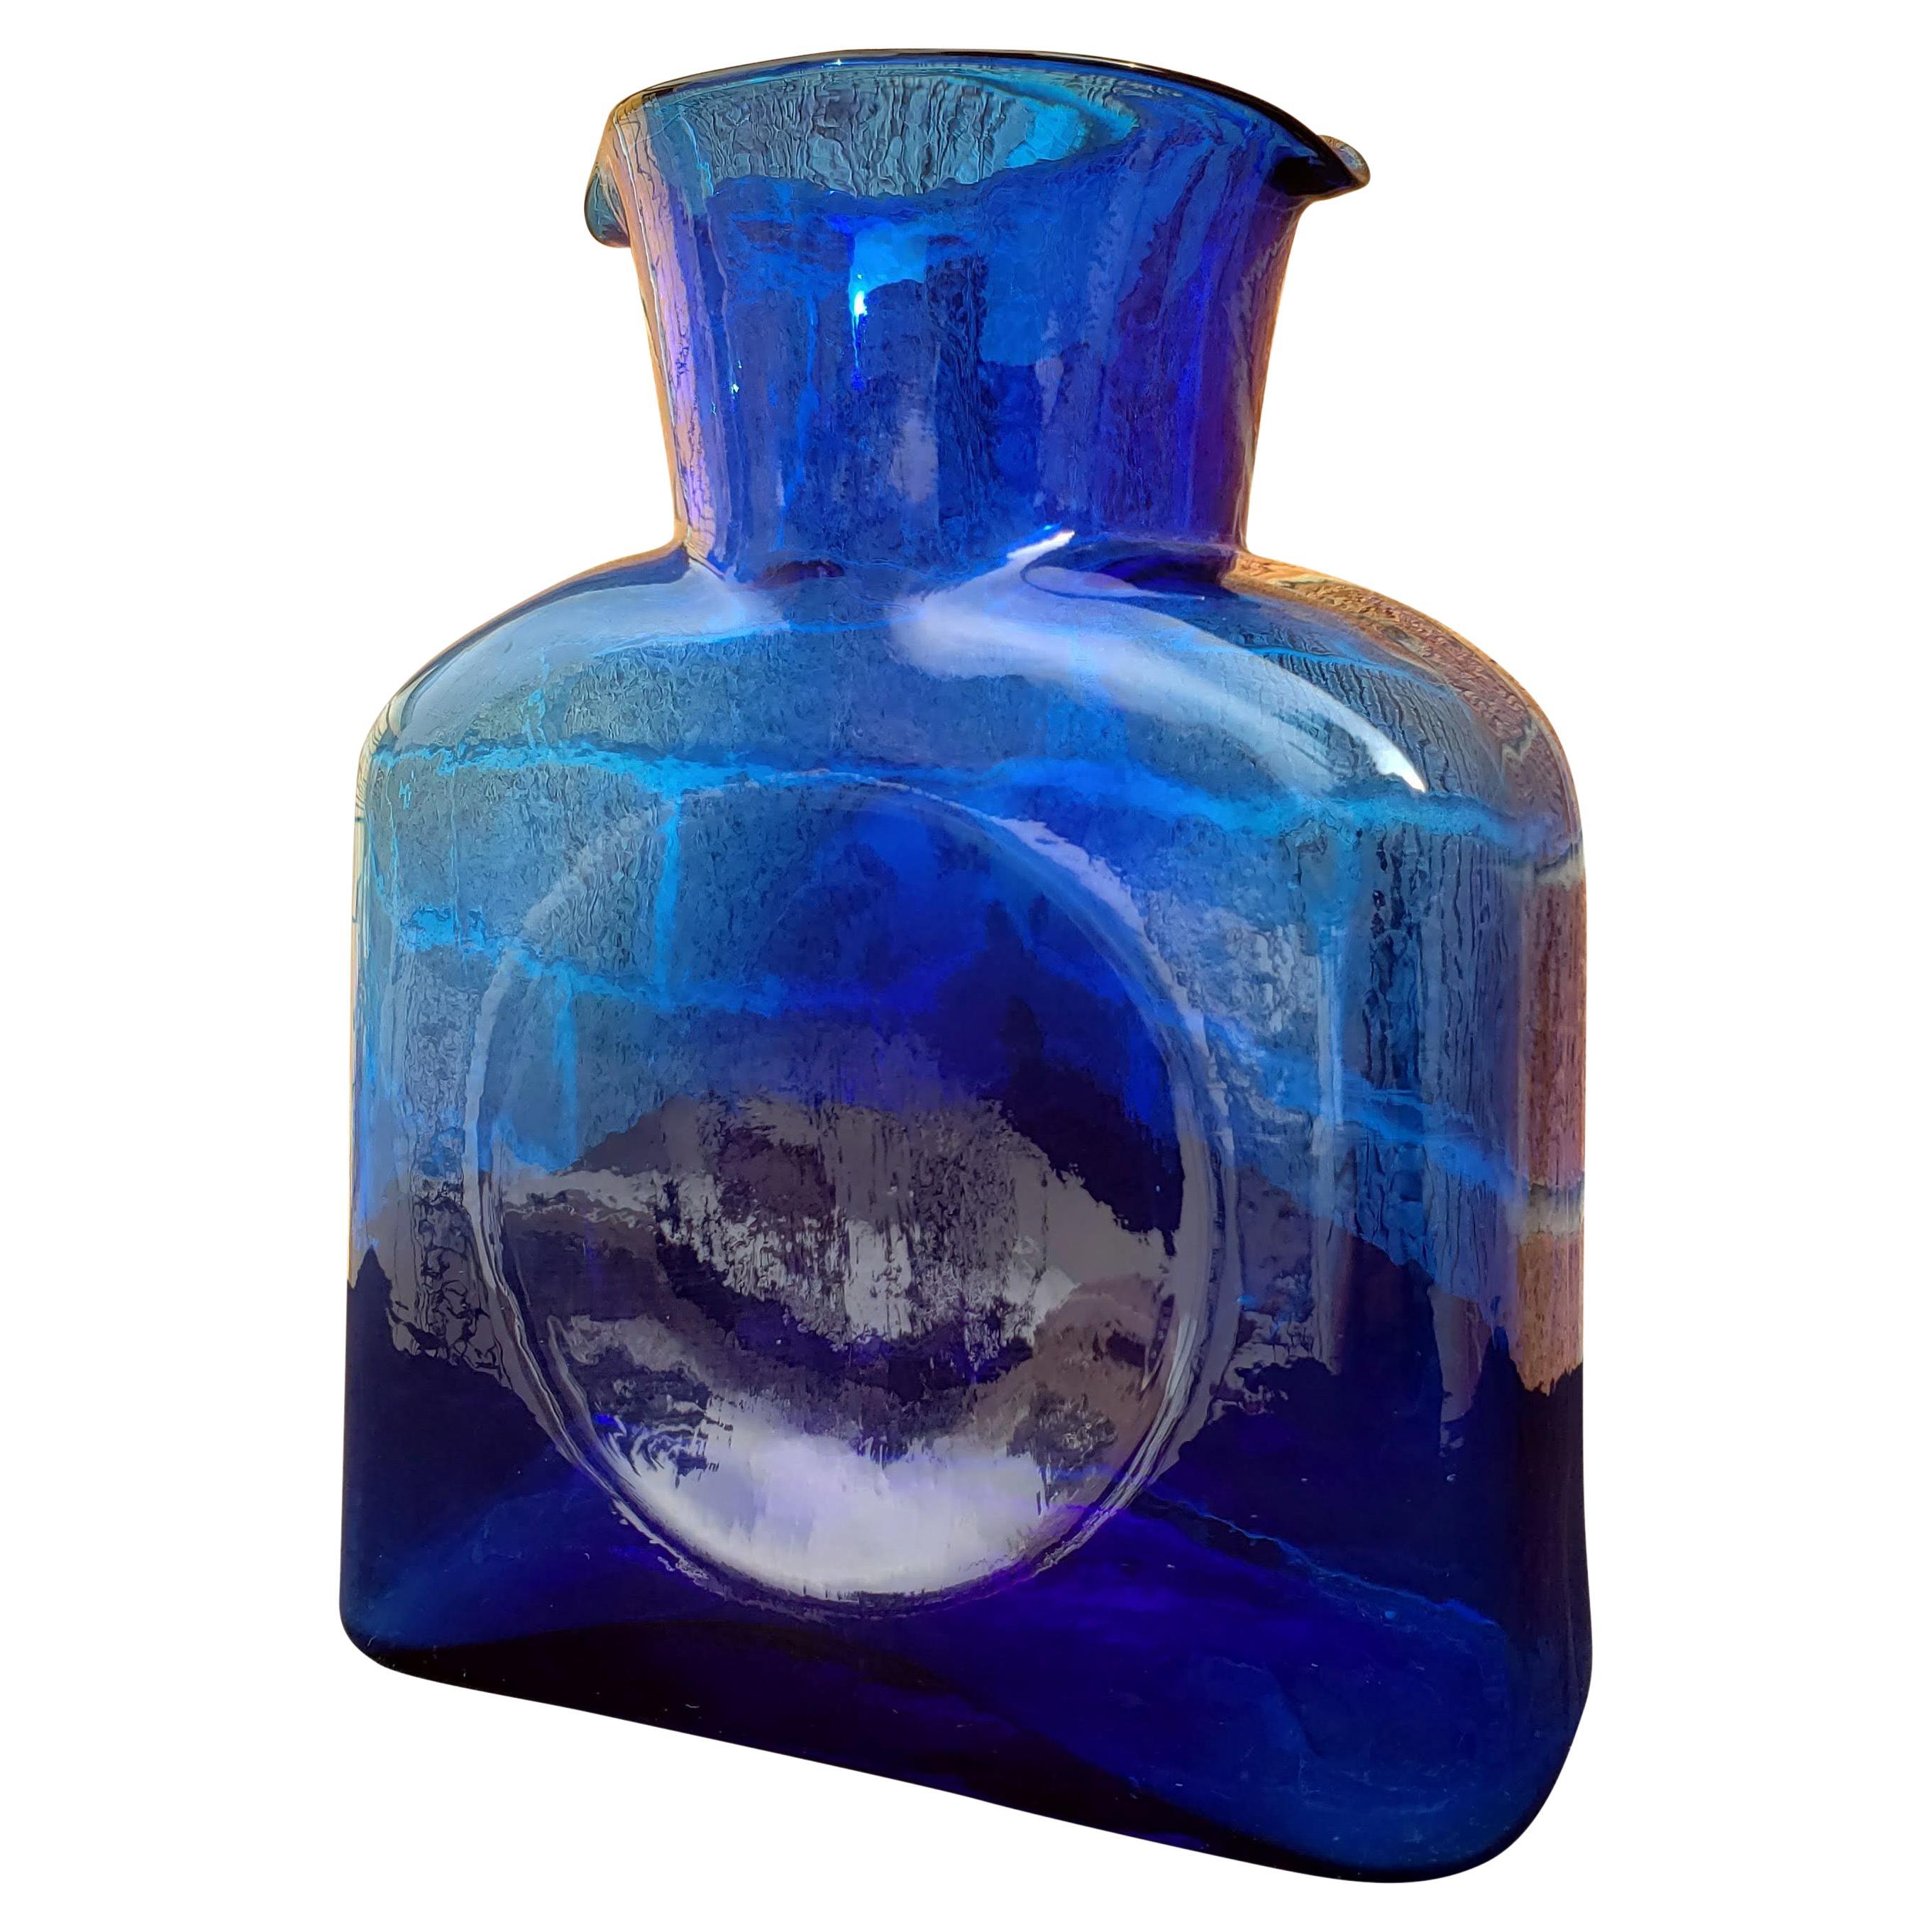 Mcm Cobalt Blue Blenko Art Glass Flowers Embossed Textured Decanter W Stopper